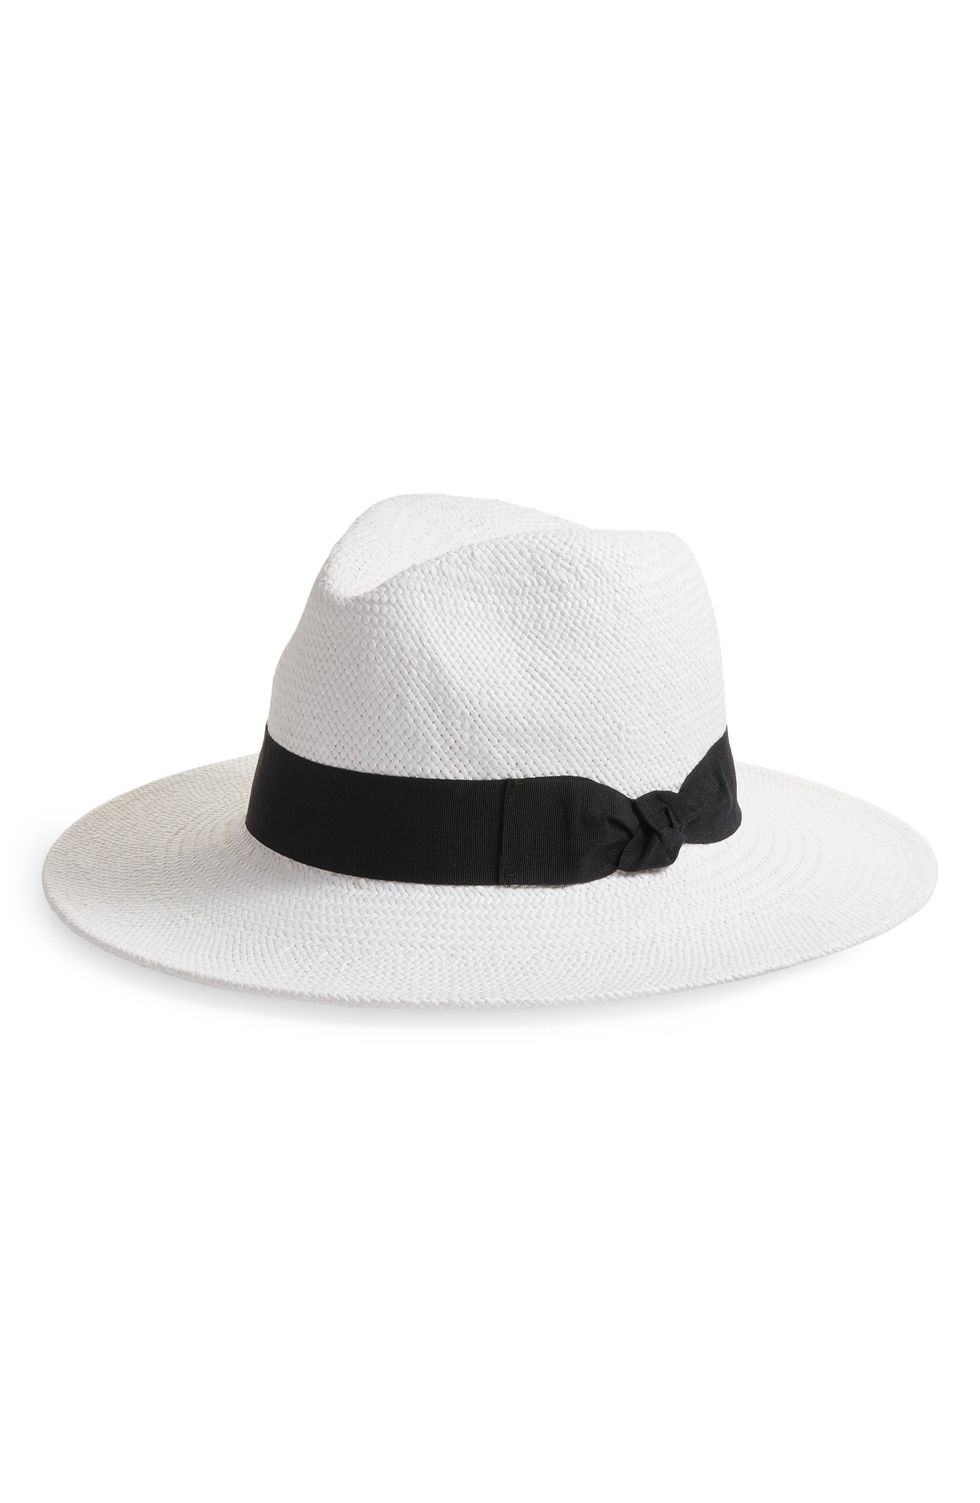 White Paper Straw Panama Hat 